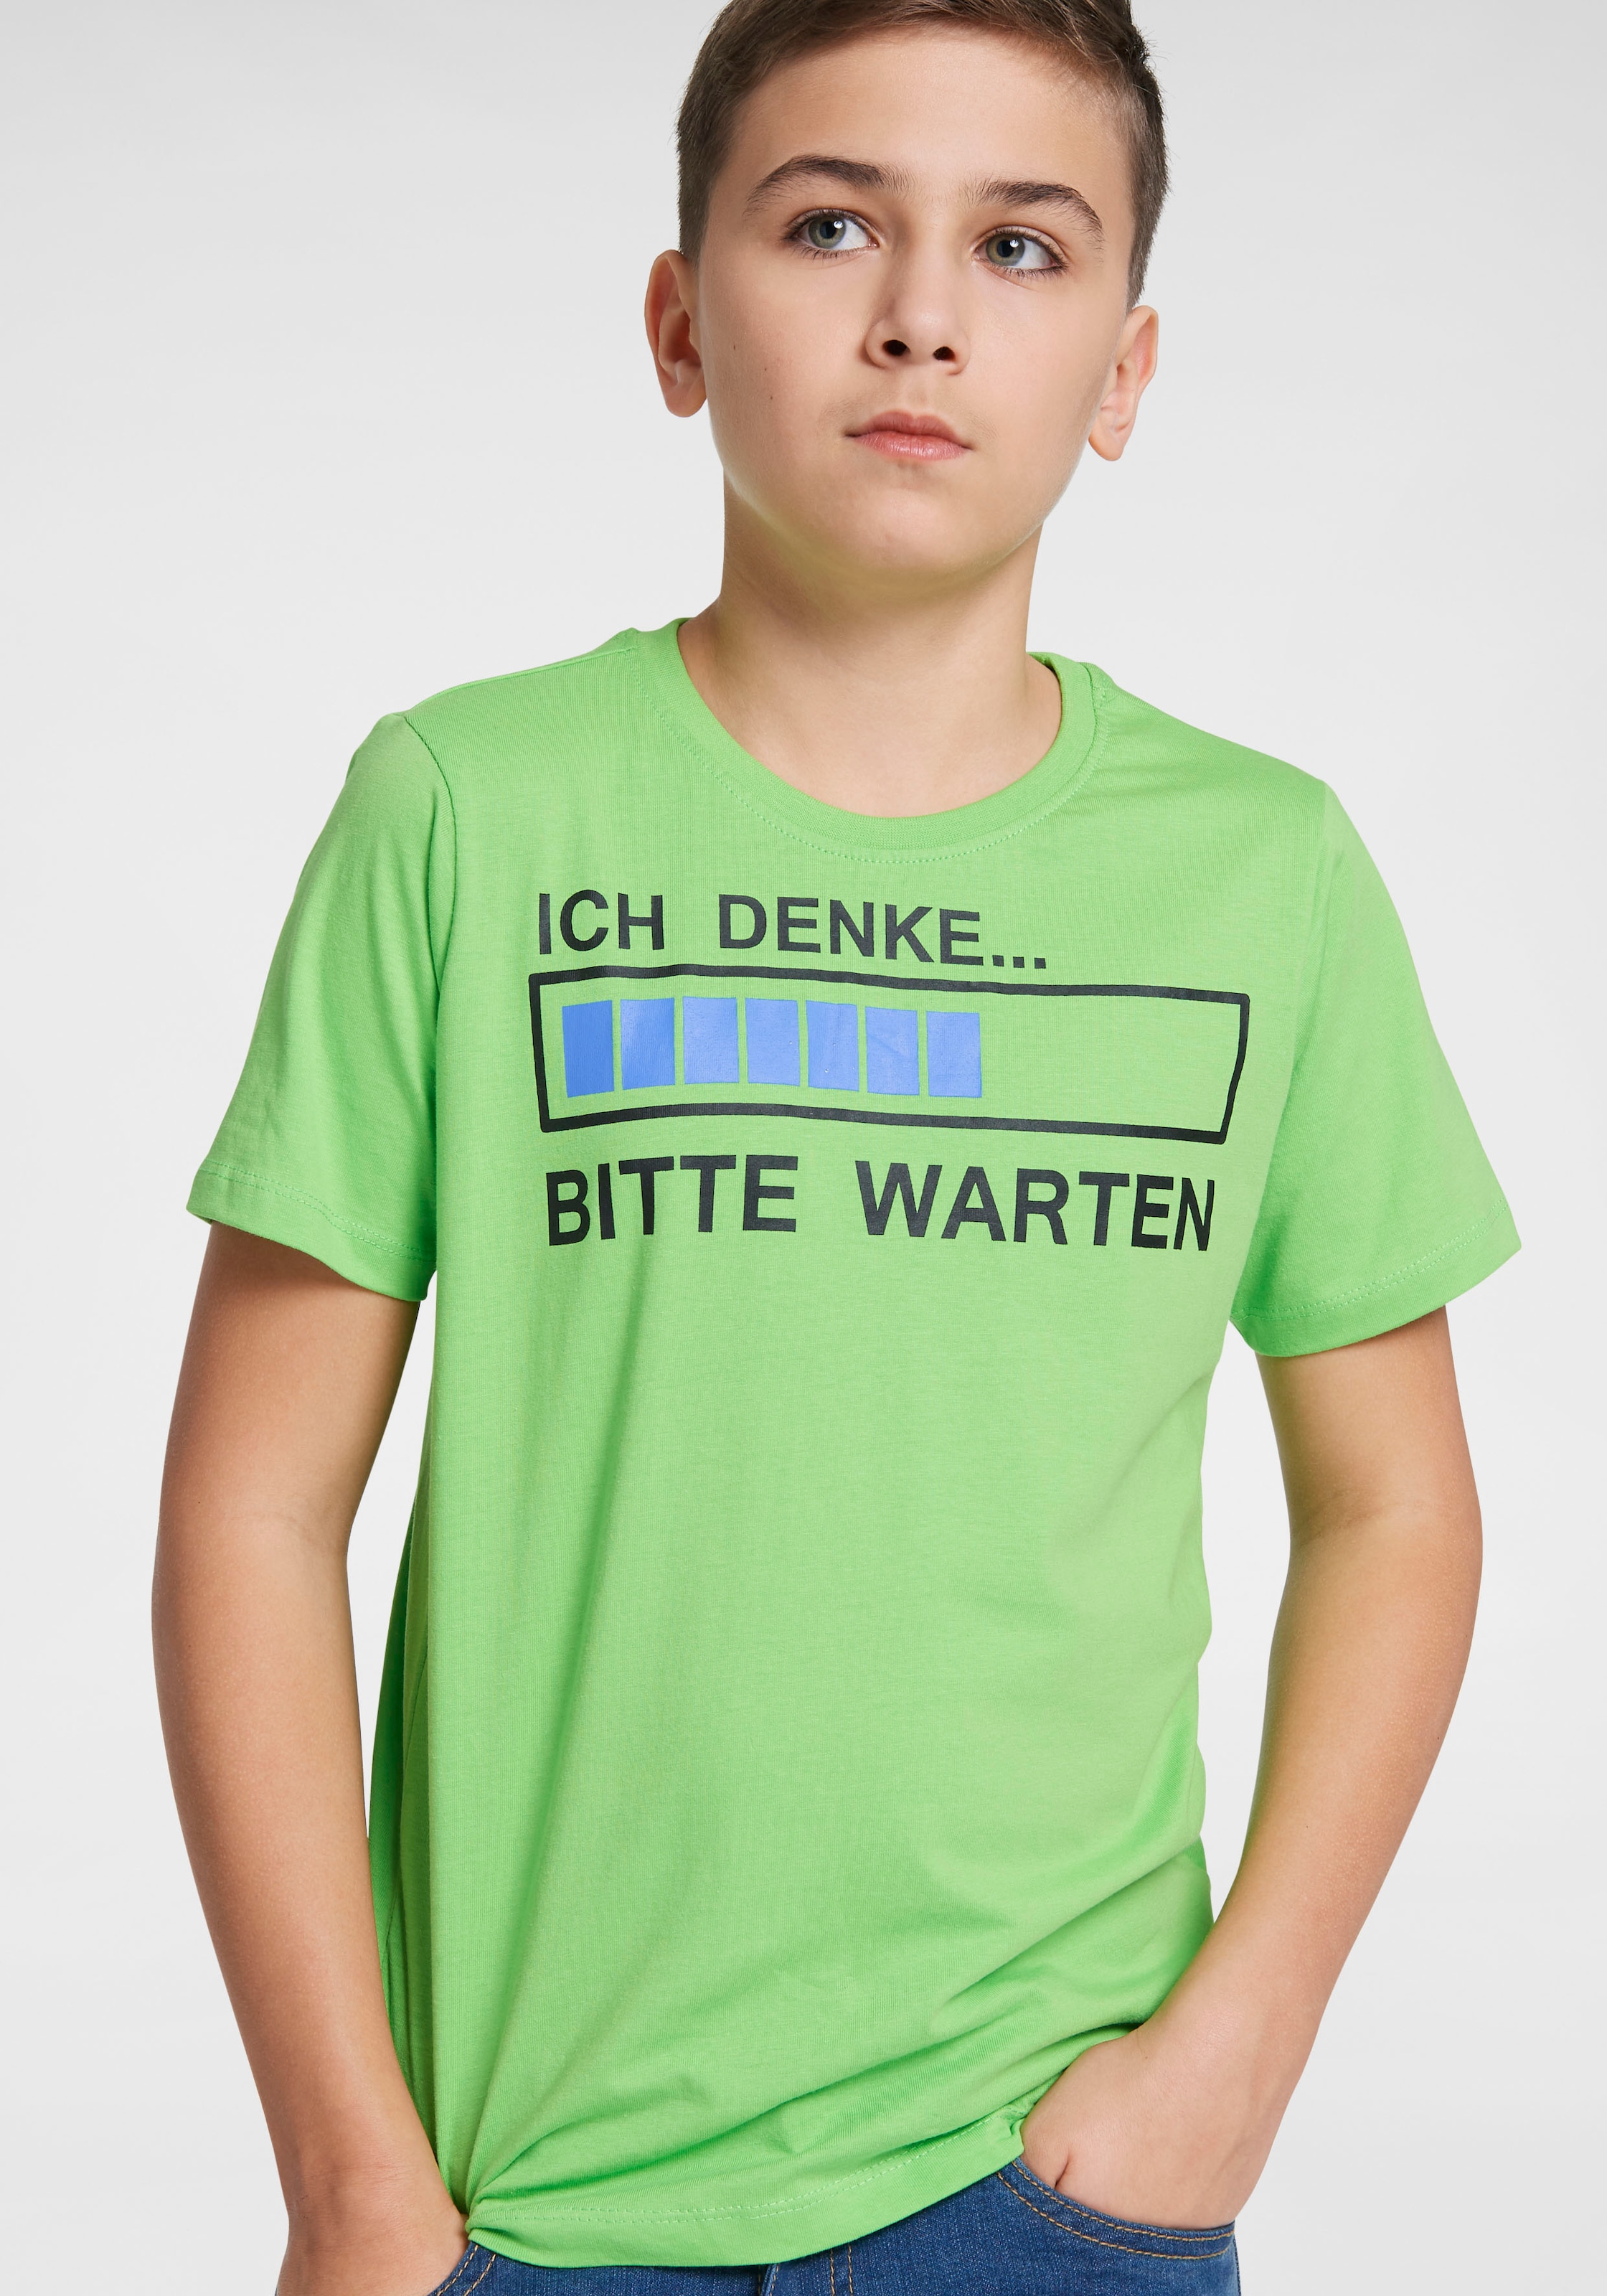 | T-Shirt online WARTEN«, ✵ KIDSWORLD ordern DENKE...BITTE Spruch Jelmoli-Versand »ICH